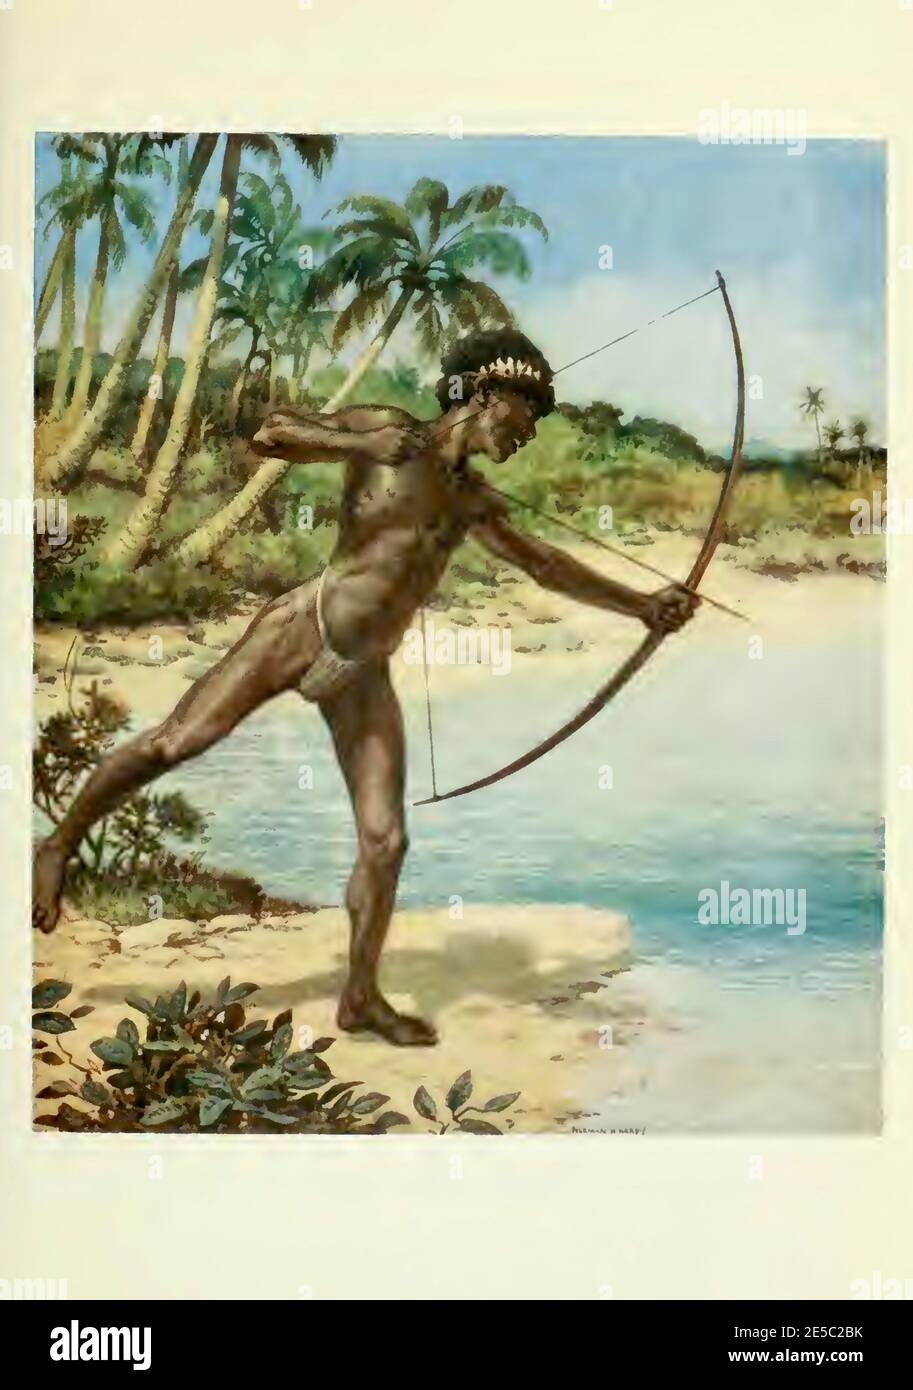 El arquero nativo de las Islas Solomanas se encuentra a la orilla del agua esperando a disparar peces. Pintura de Norman Hardy de principios de 1900. Foto de stock